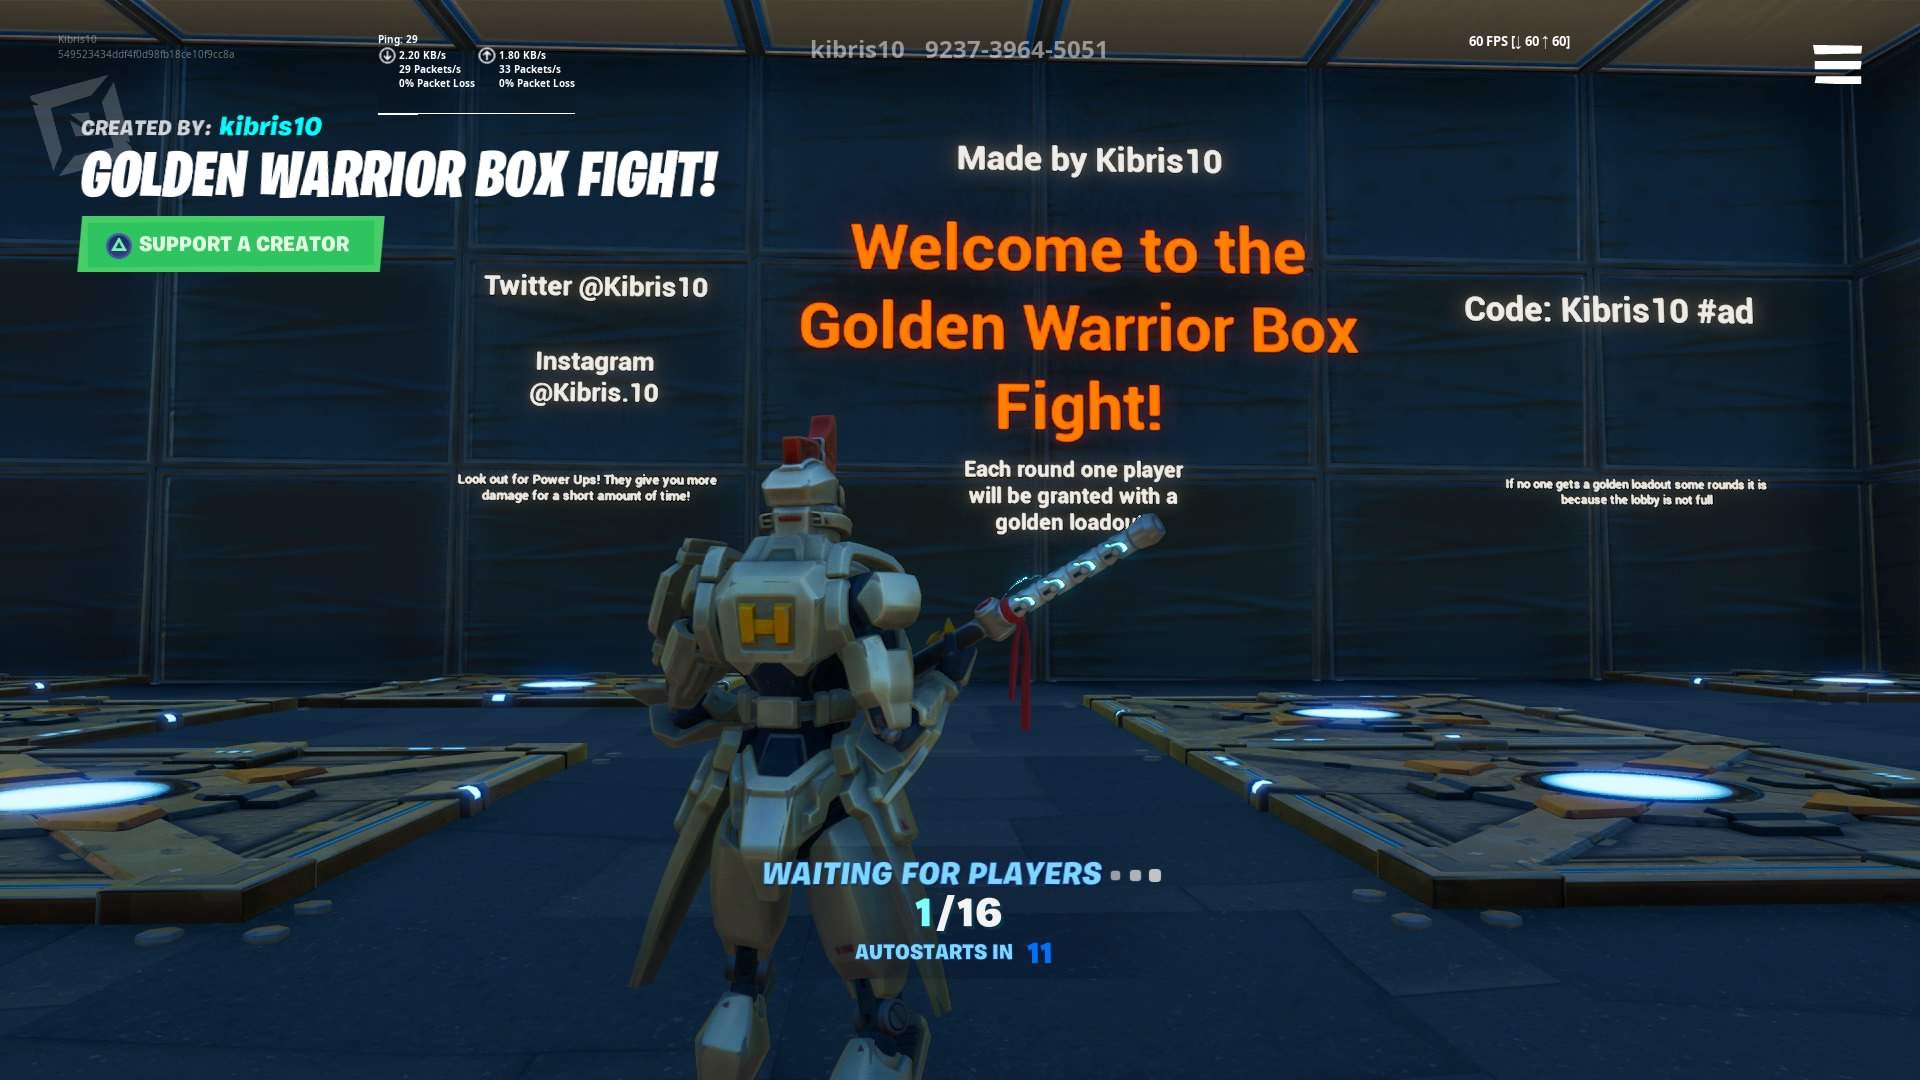 GOLDEN WARRIOR BOX FIGHT!